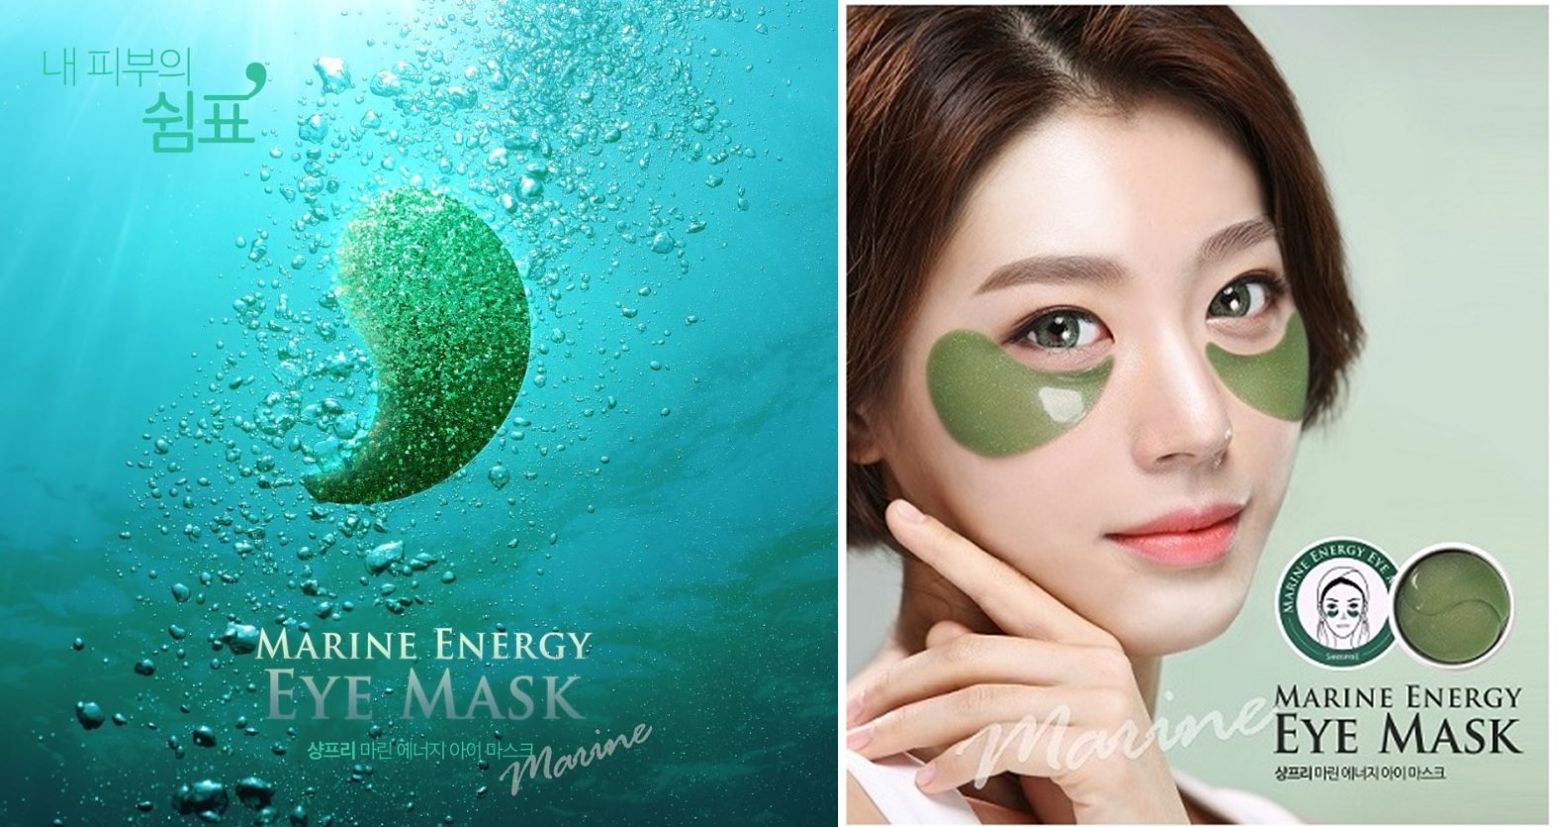 à¸à¸¥à¸à¸²à¸£à¸à¹à¸à¸«à¸²à¸£à¸¹à¸à¸�à¸²à¸à¸ªà¸³à¸«à¸£à¸±à¸ Shangpree Marine Energy Eye Mask